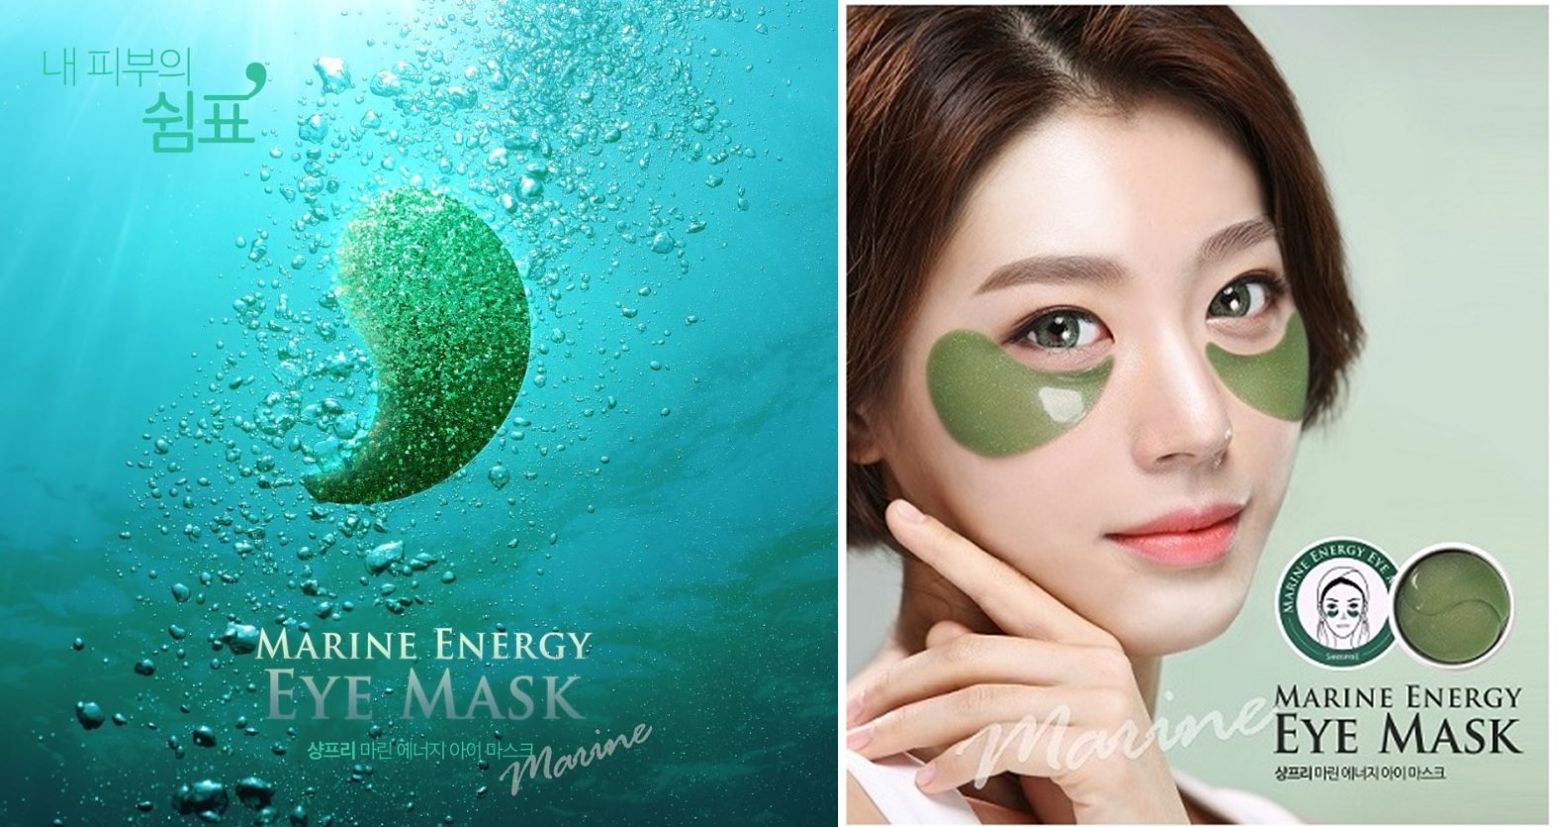 à¸à¸¥à¸à¸²à¸£à¸à¹à¸à¸«à¸²à¸£à¸¹à¸à¸�à¸²à¸à¸ªà¸³à¸«à¸£à¸±à¸ Shangpree Marine Energy Eye Mask